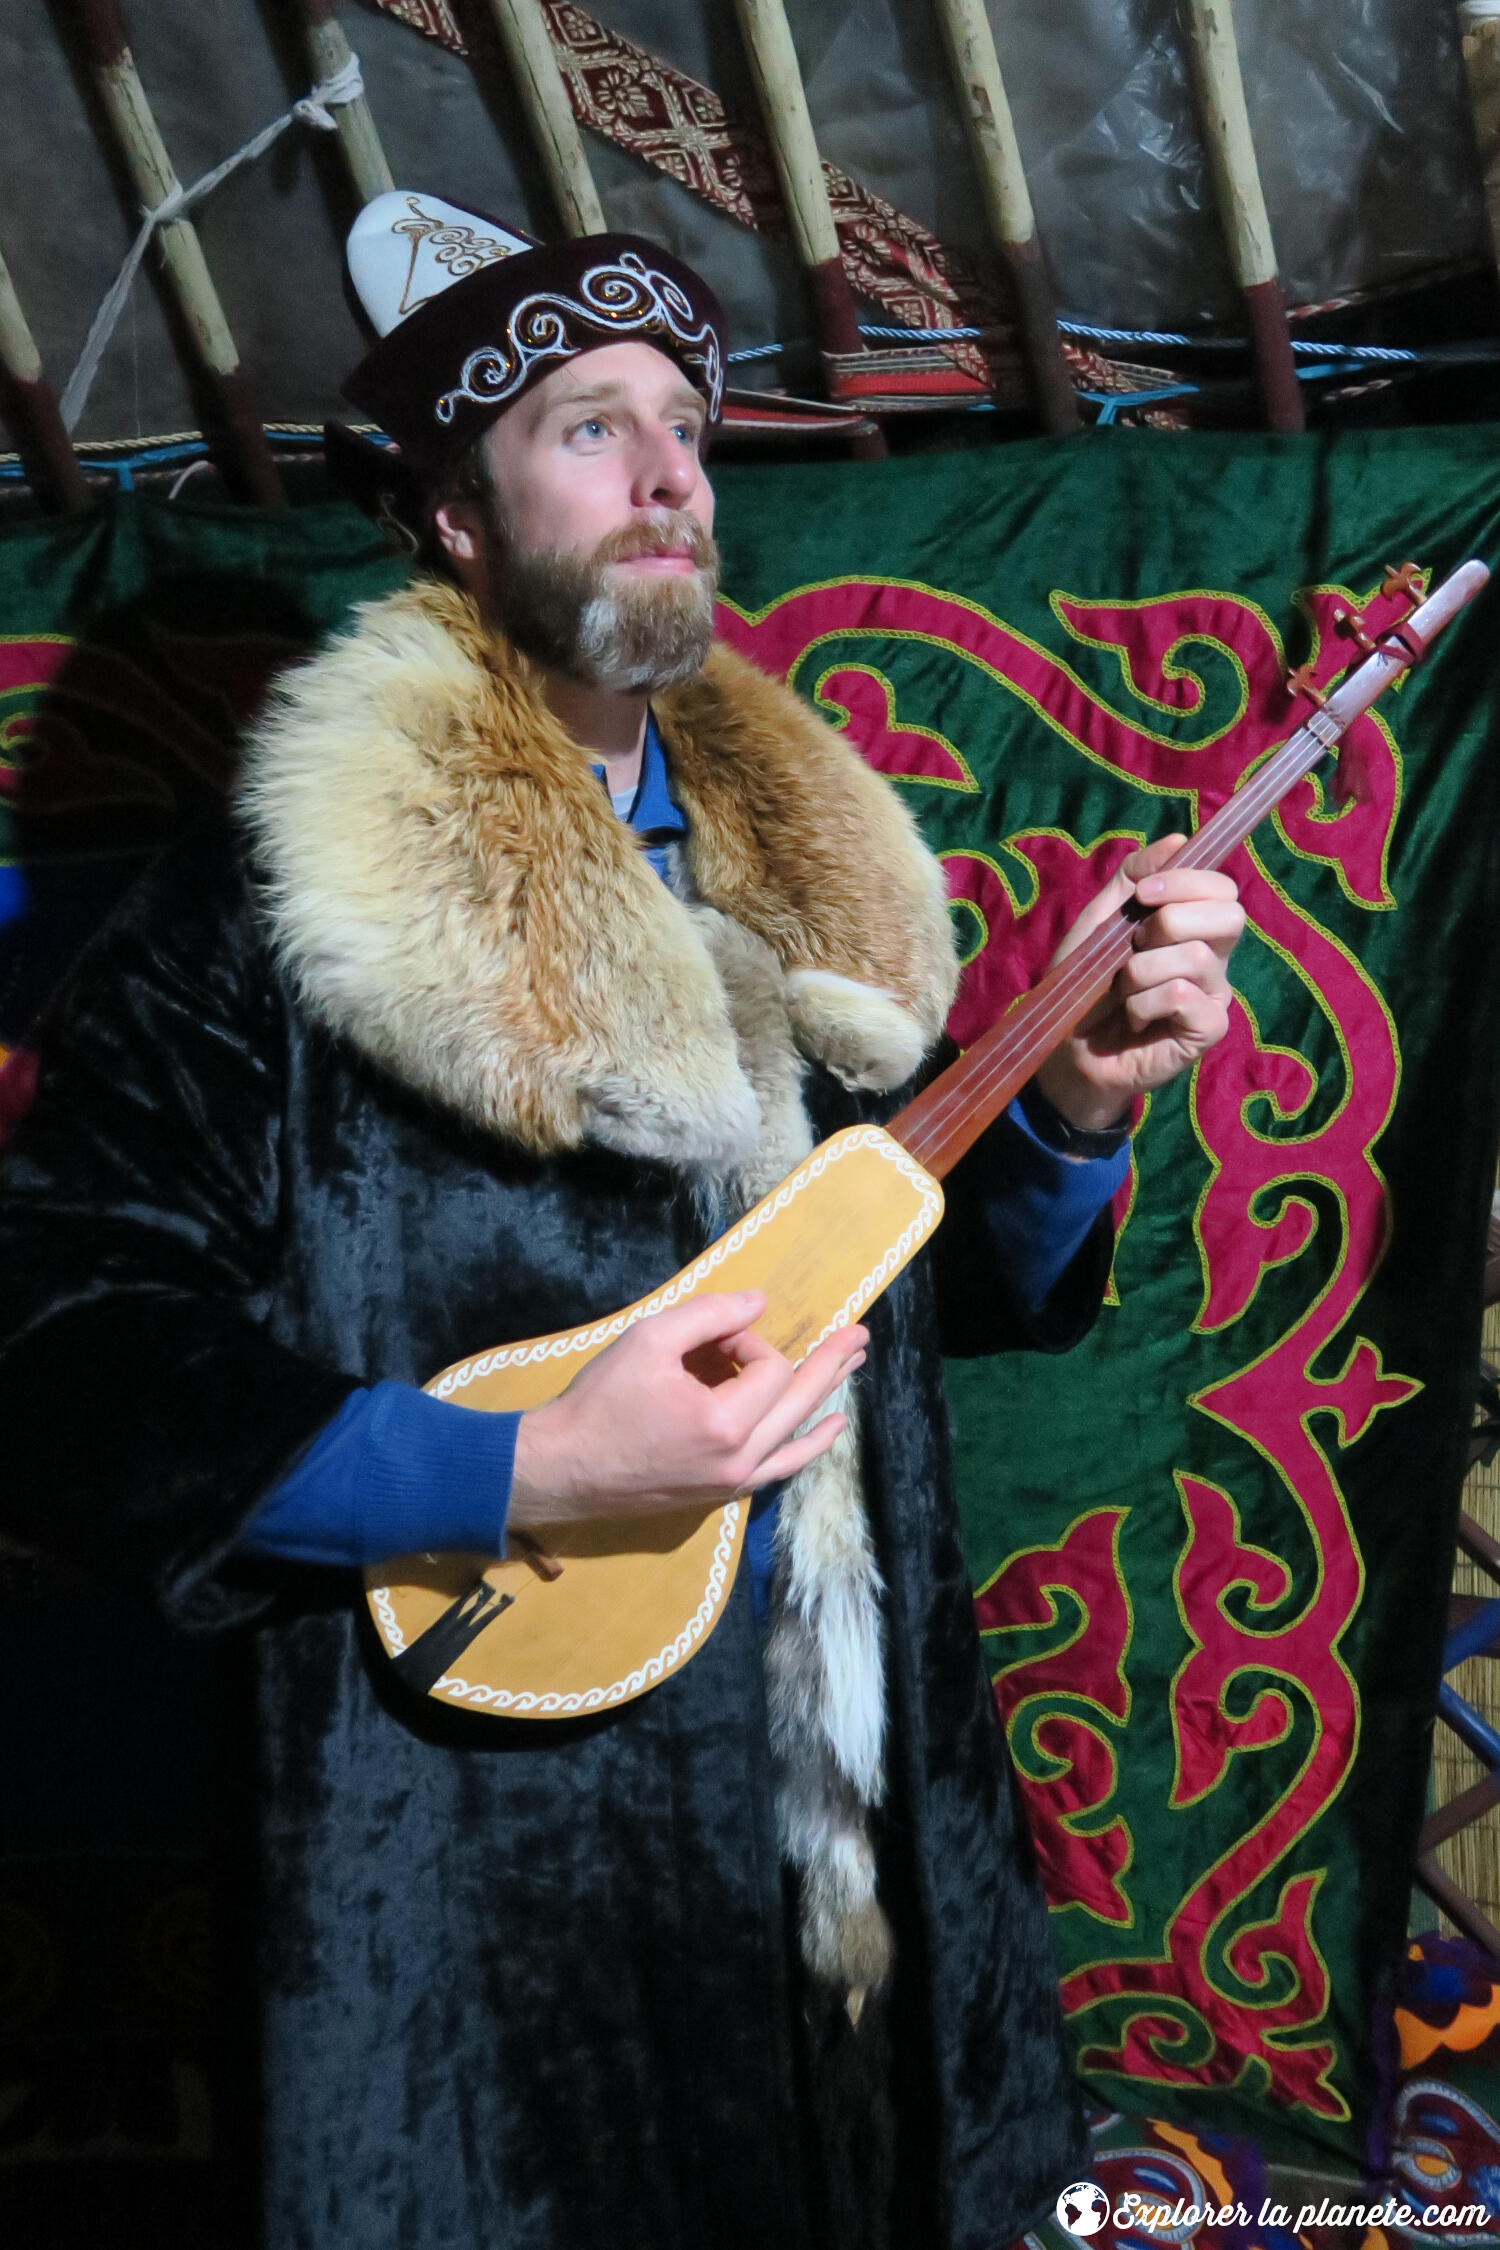 Habillé avec les vêtements traditionnels et l'instrument de musique typique du pays (komuz).